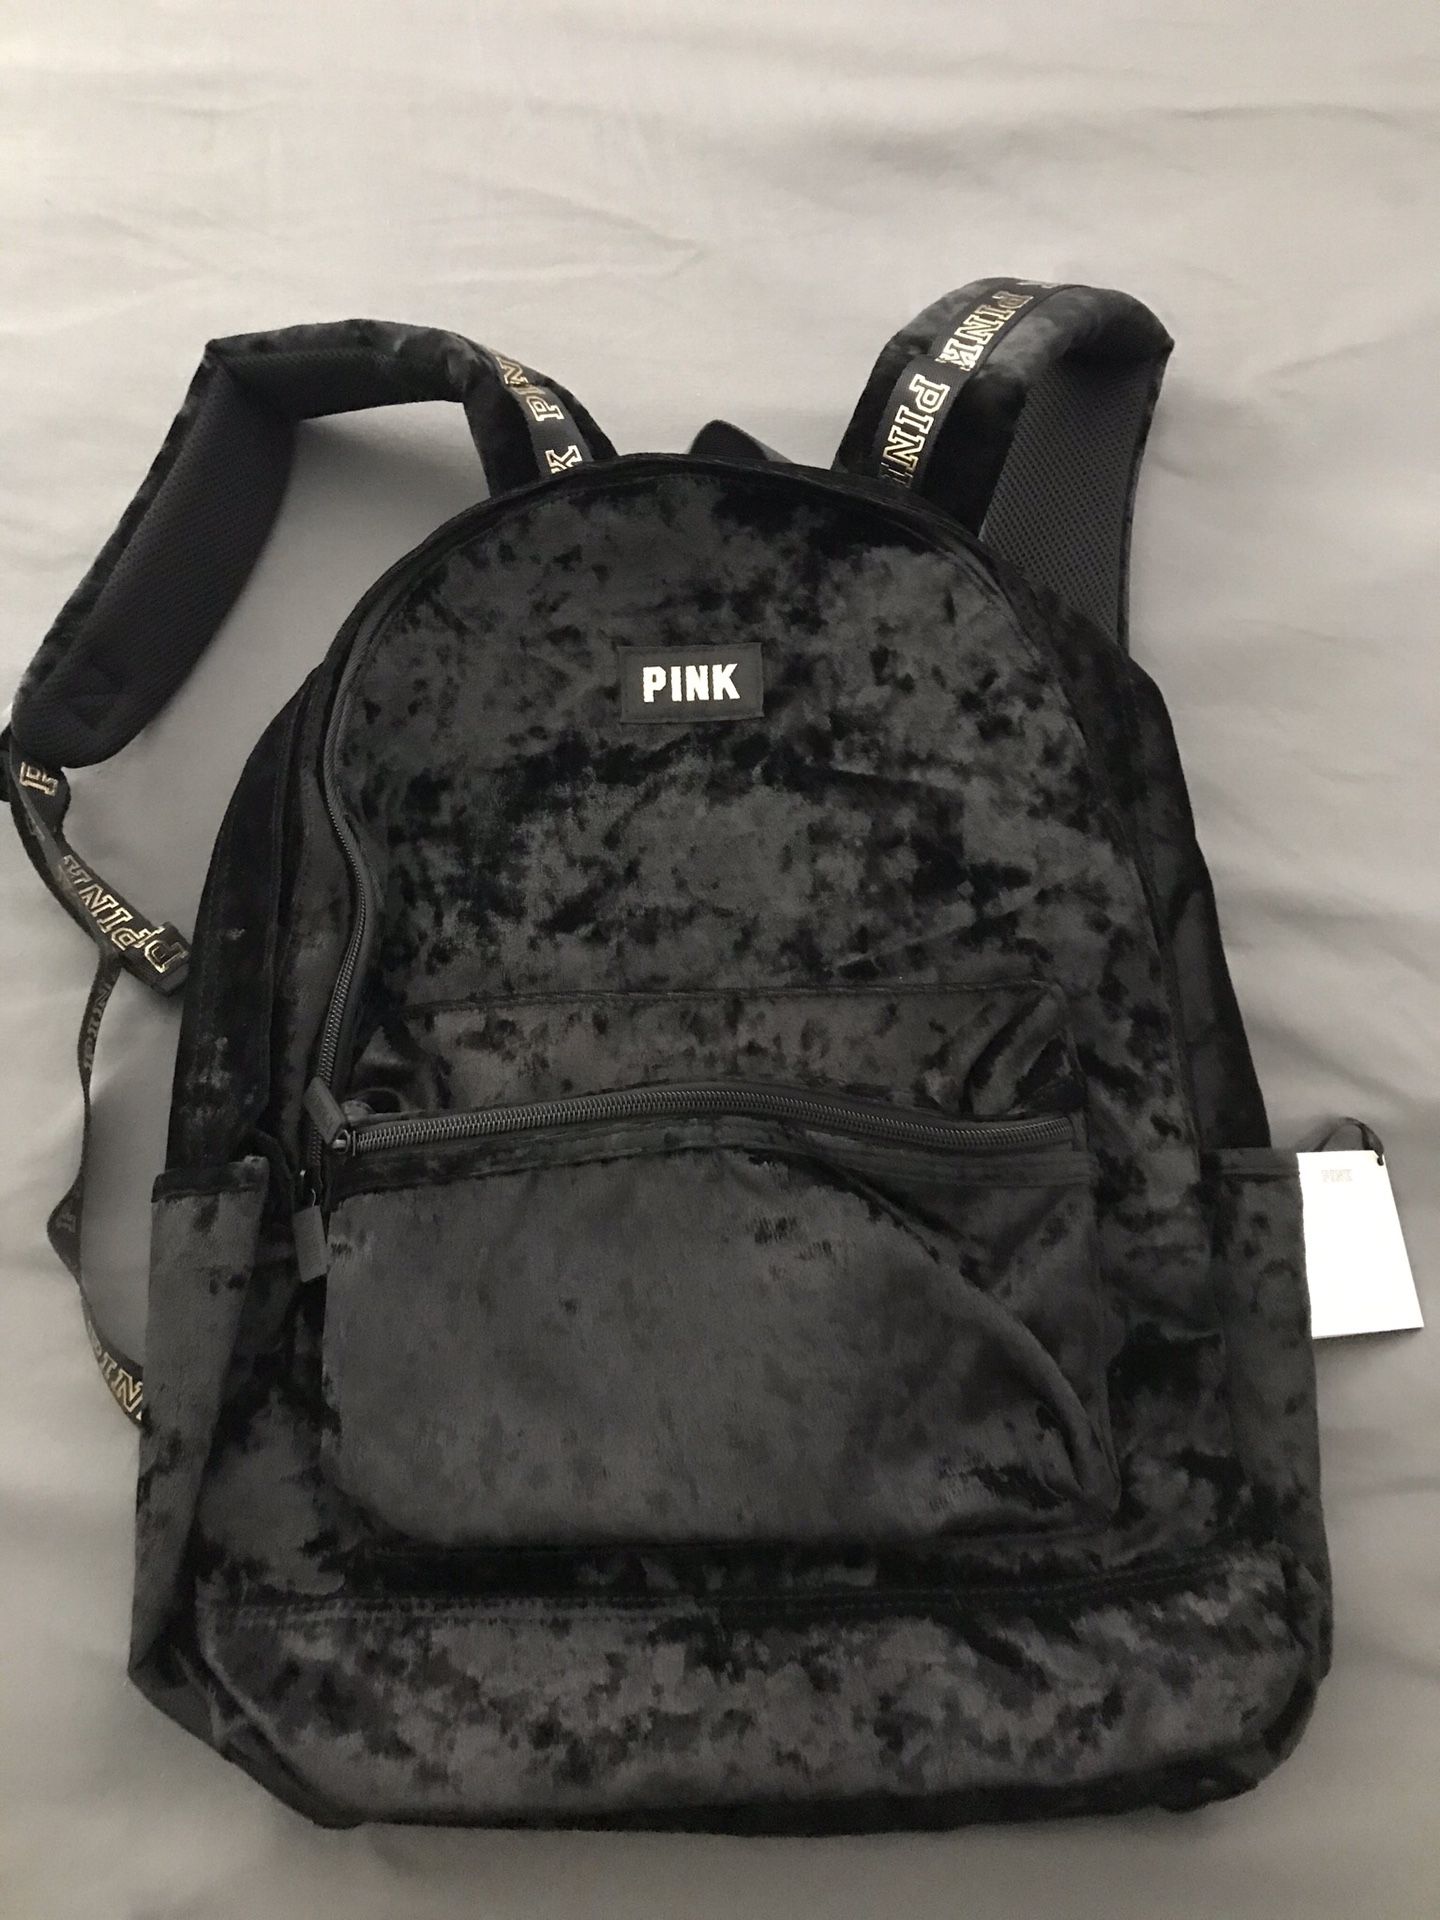 PINK Victoria’s Secret Black Velvet Campus Backpack